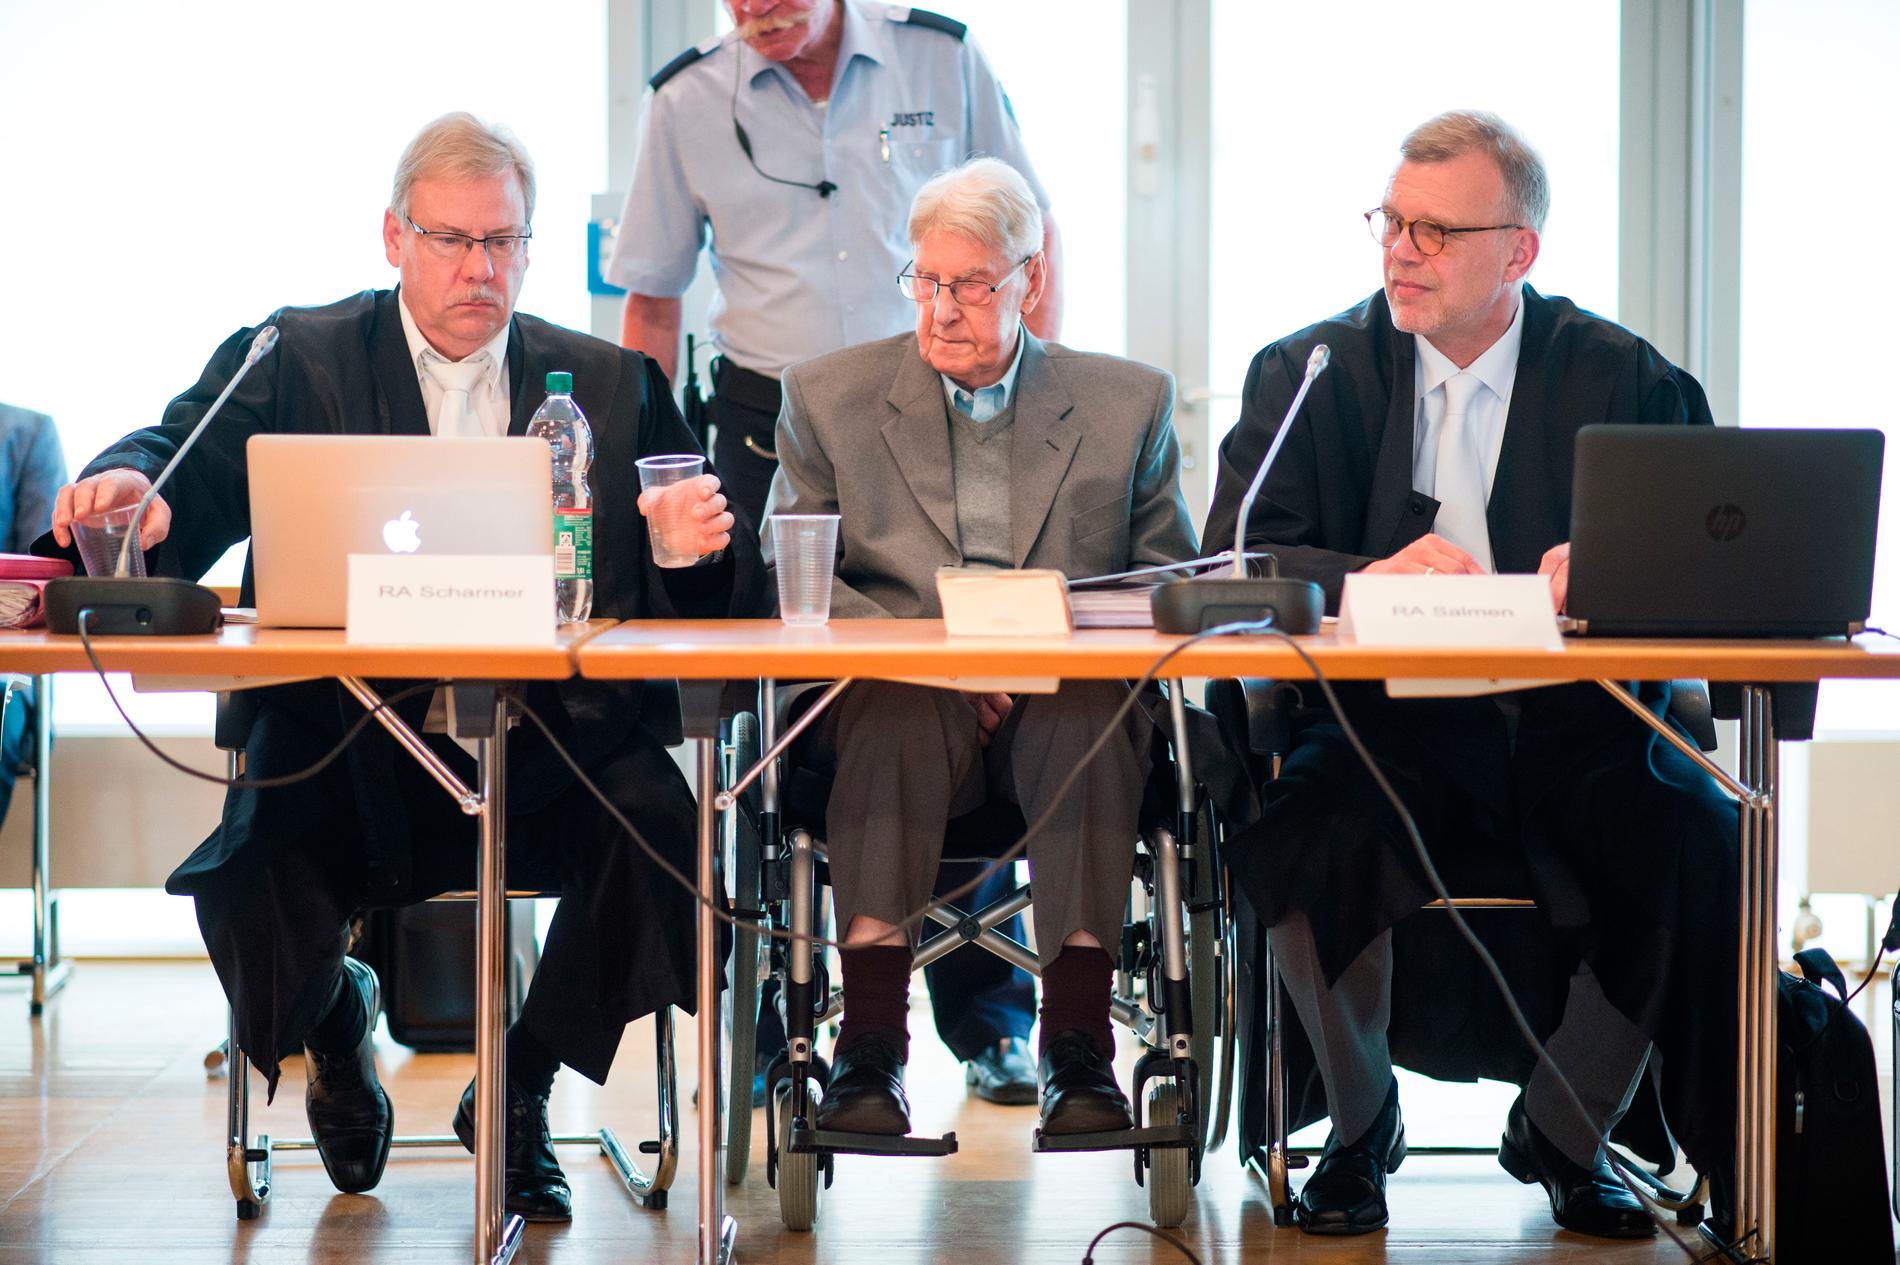 Reinhold Hanning (mitten) mellan sina advokater under rättegången.